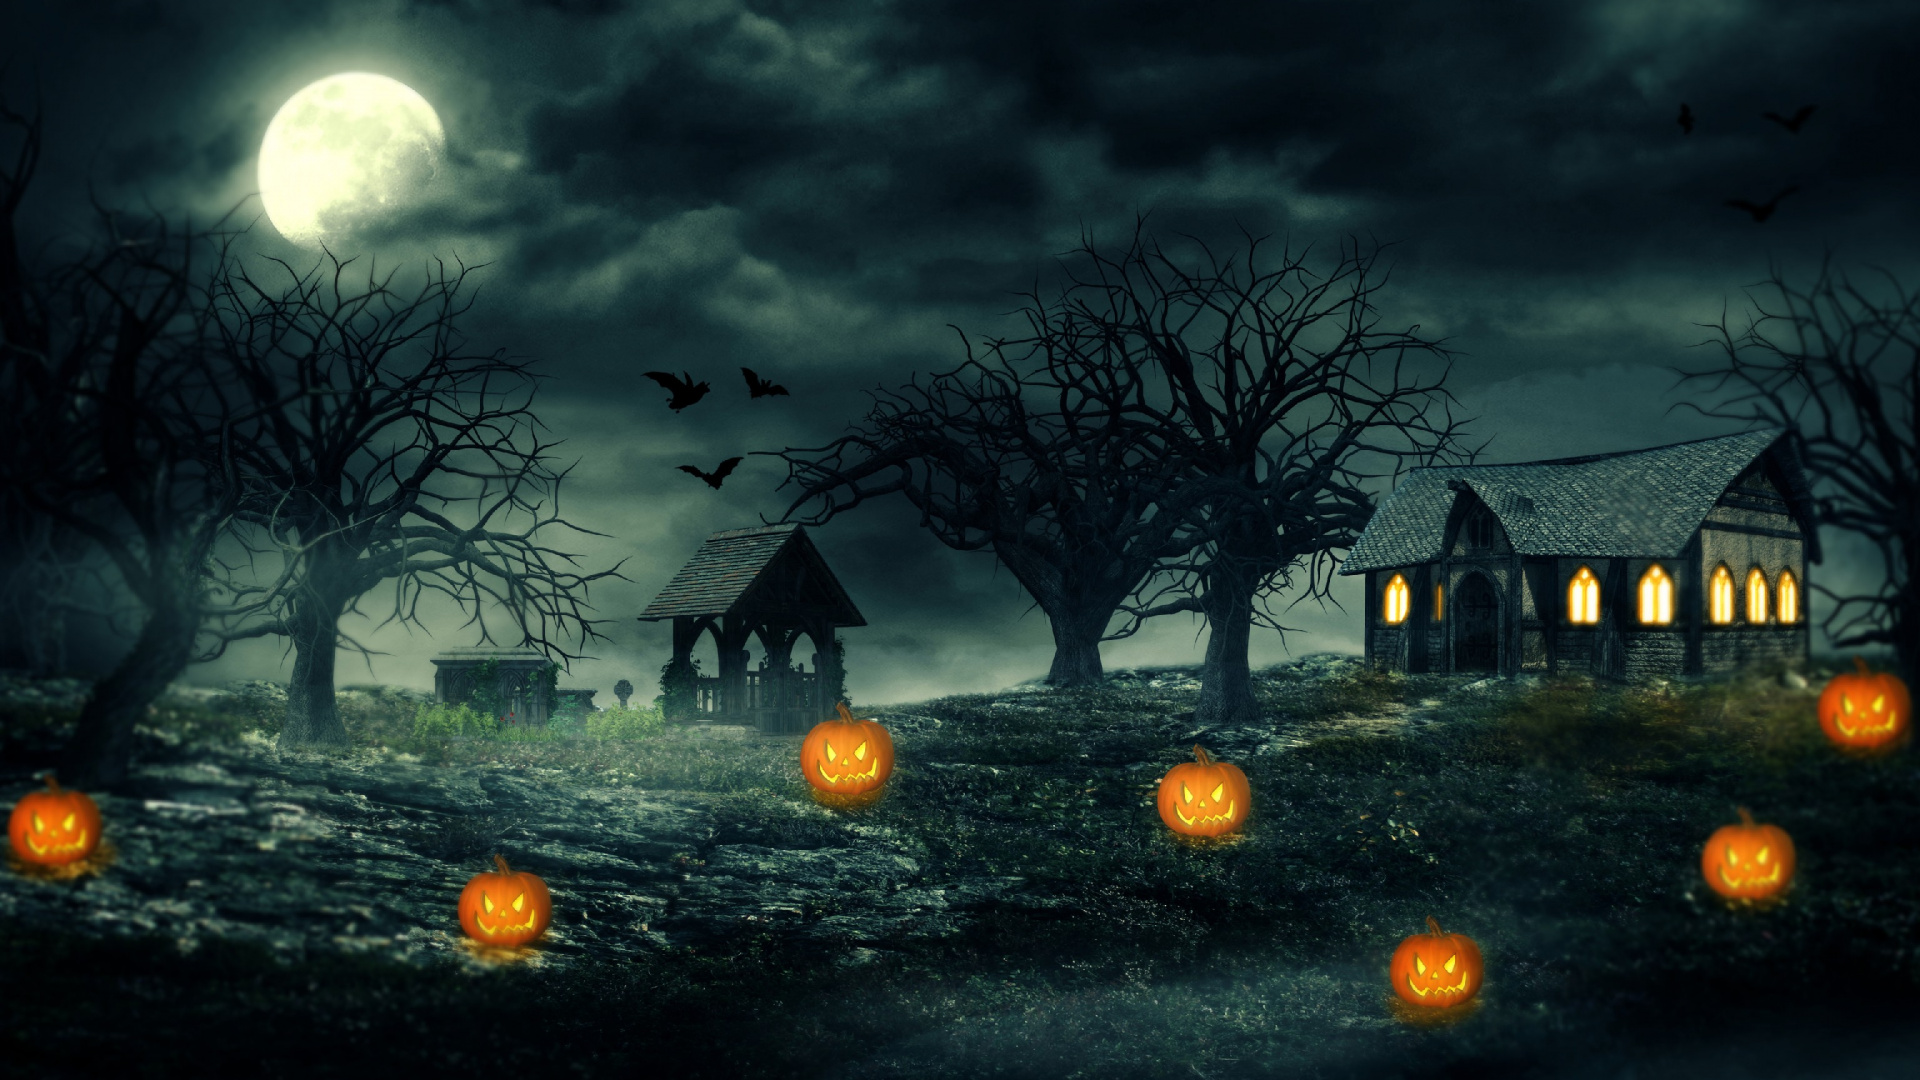 Halloween Haunted House, Haunted House, Haunted Attraction, Nature, Moonlight. Wallpaper in 1920x1080 Resolution